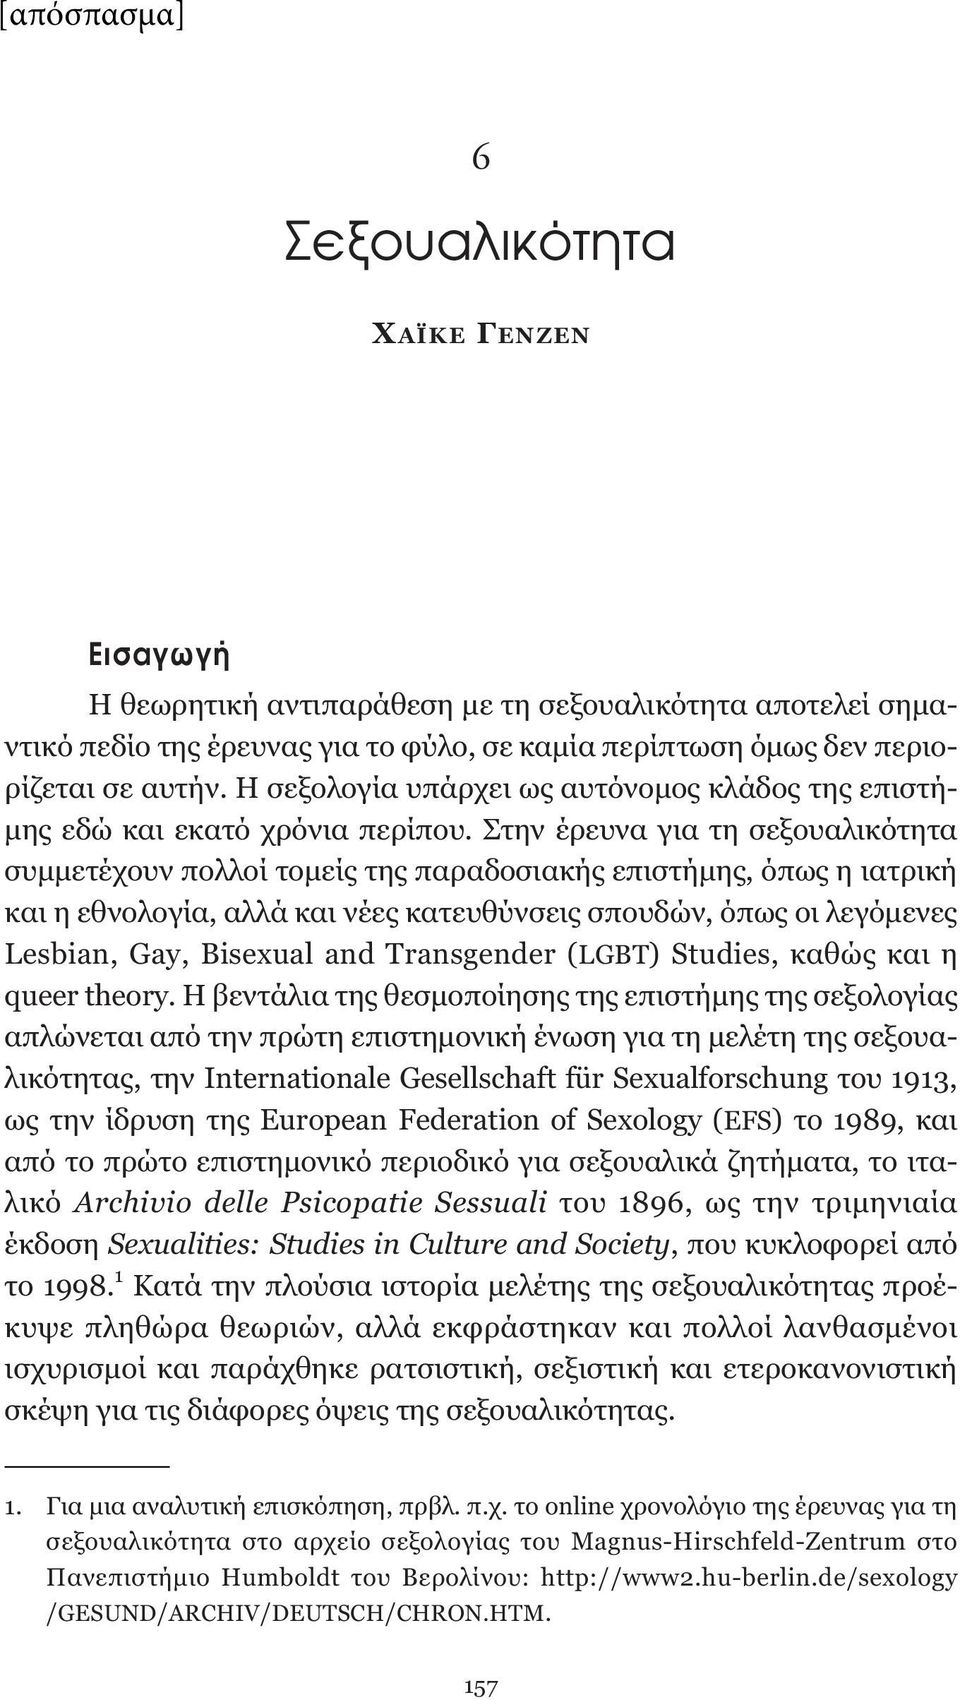 Στην έρευνα για τη σεξουαλικότητα συμμετέχουν πολλοί τομείς της παραδοσιακής επιστήμης, όπως η ιατρική και η εθνολογία, αλλά και νέες κατευθύνσεις σπουδών, όπως οι λεγόμενες Lesbian, Gay, Bisexual